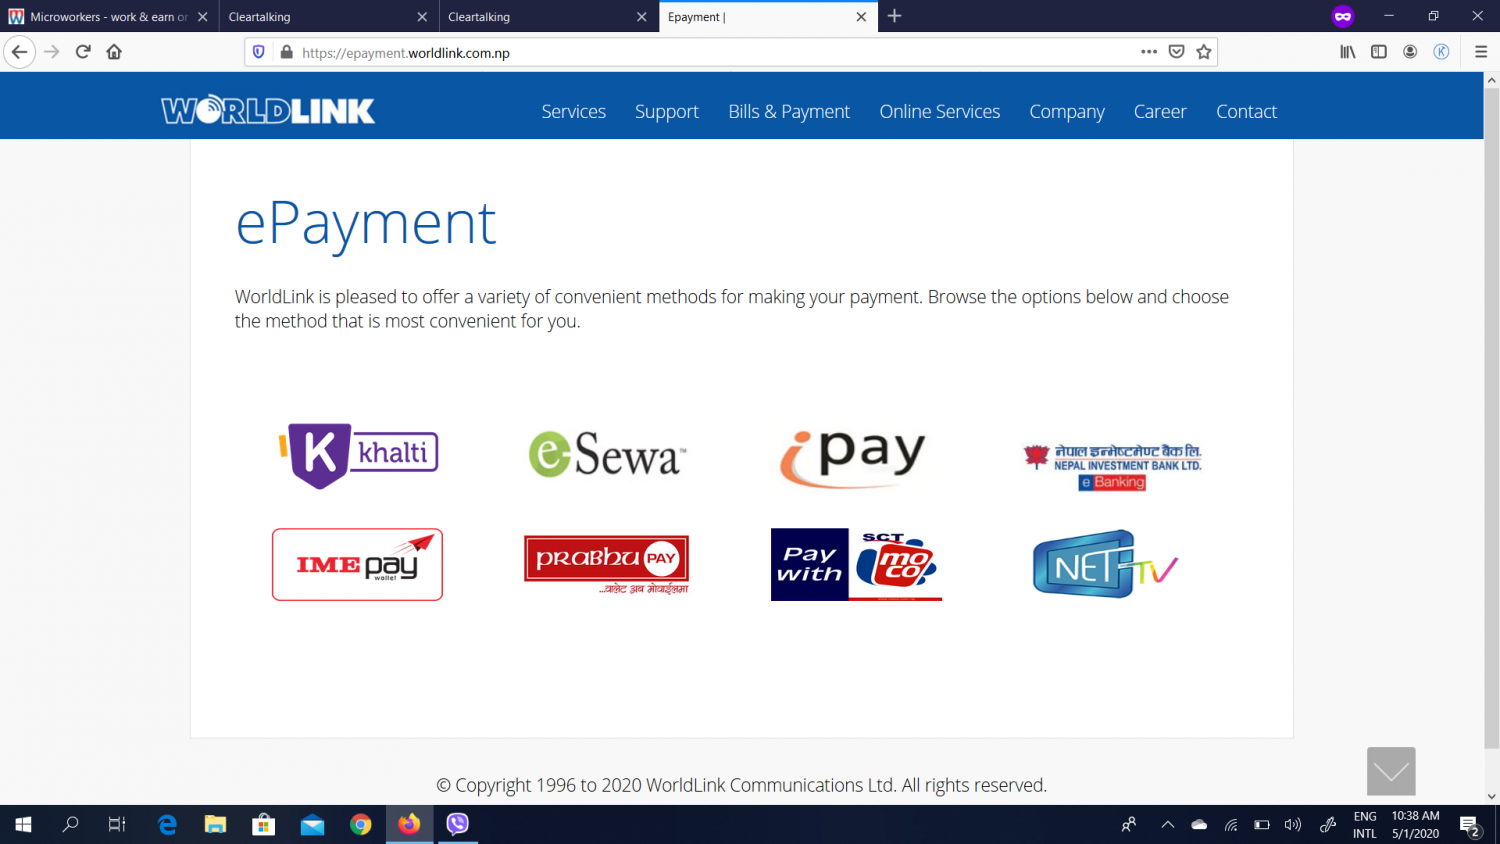 Worldlink cashback offer for digital wallet Khalti payment